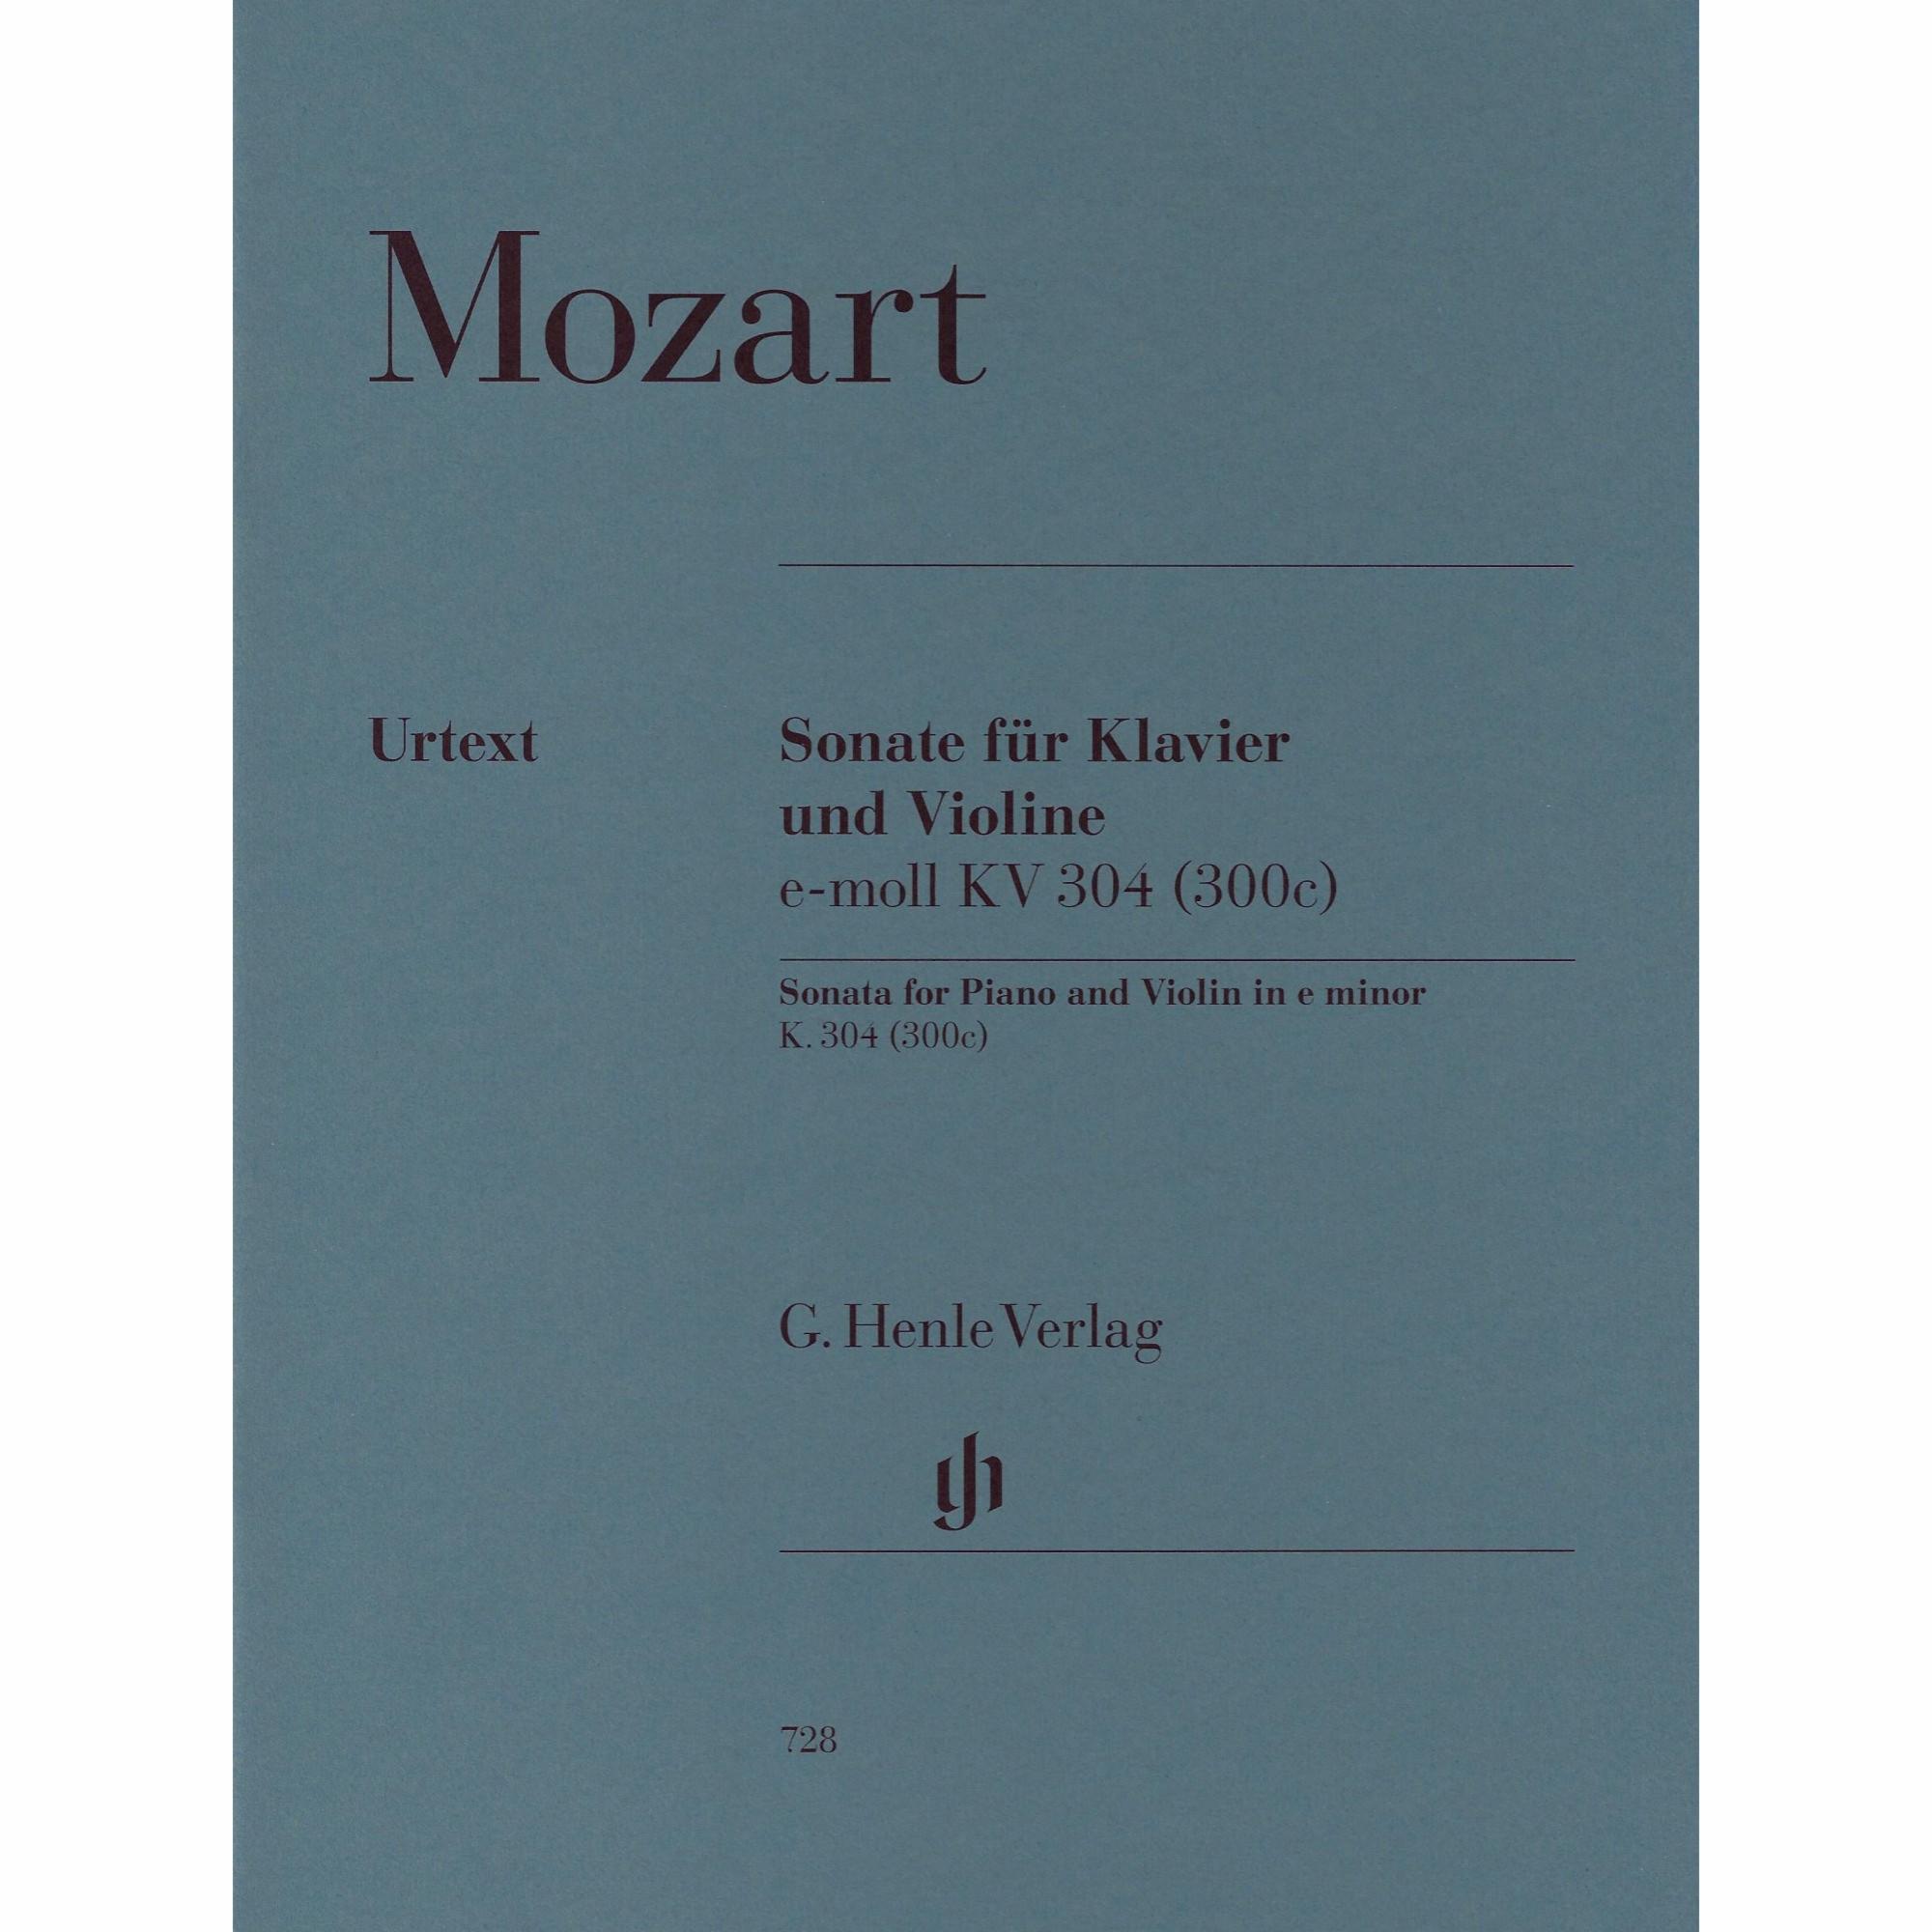 Mozart -- Sonata in E Minor, K. 304 for Violin and Piano